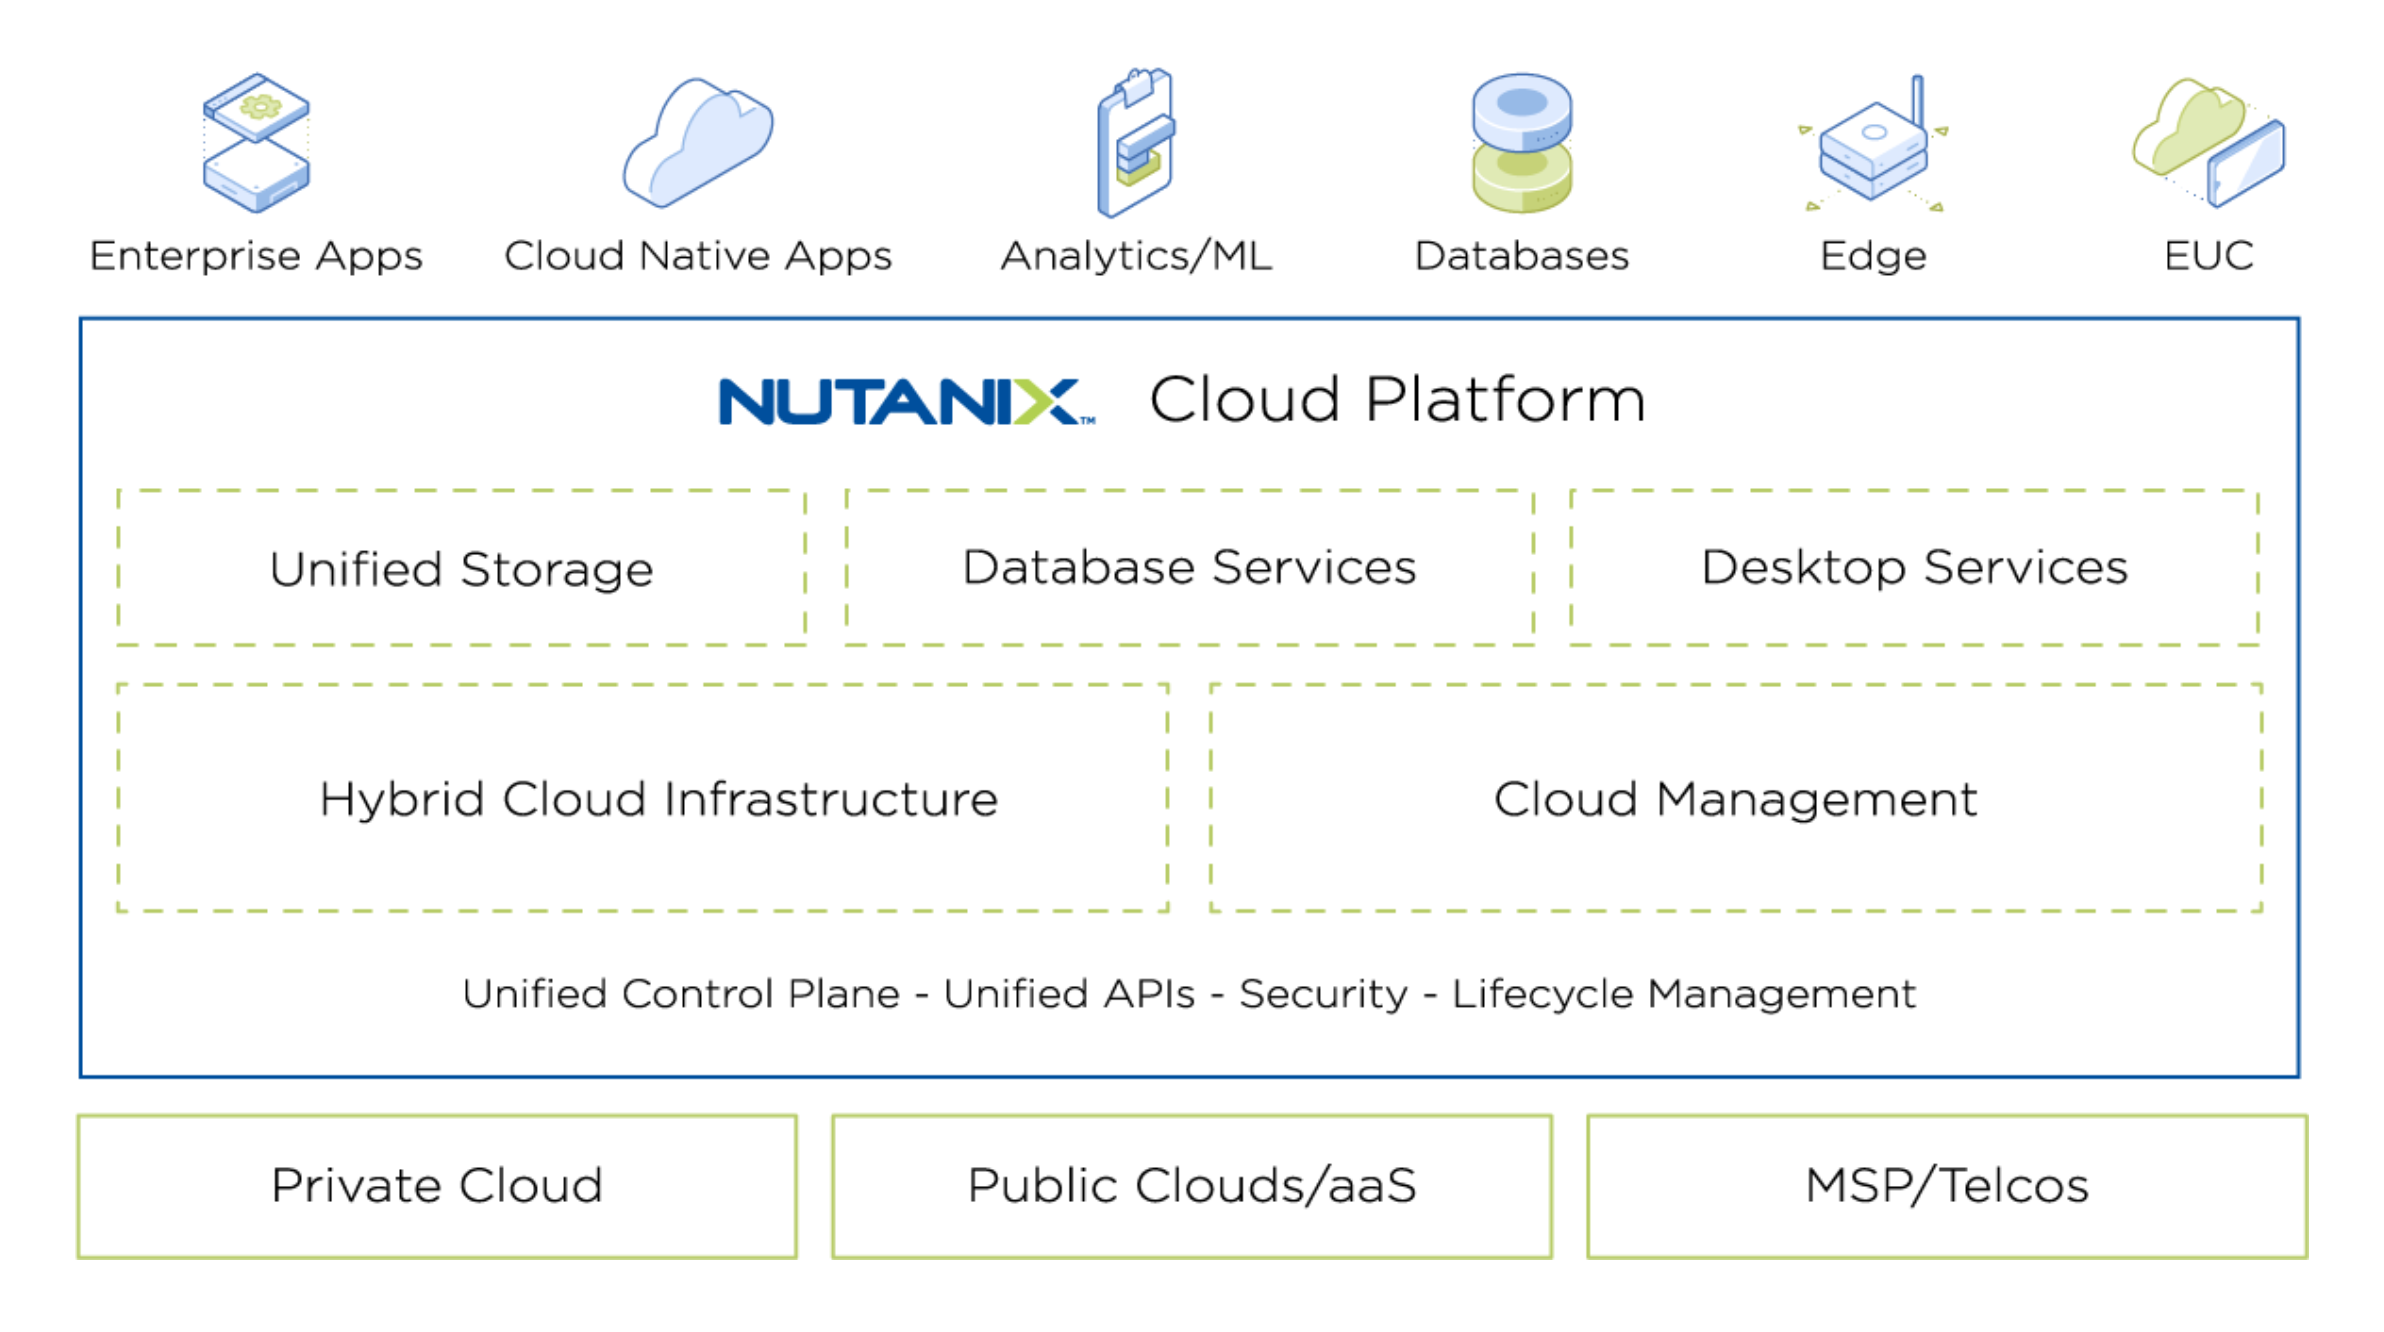 nutanix-cloud-platform